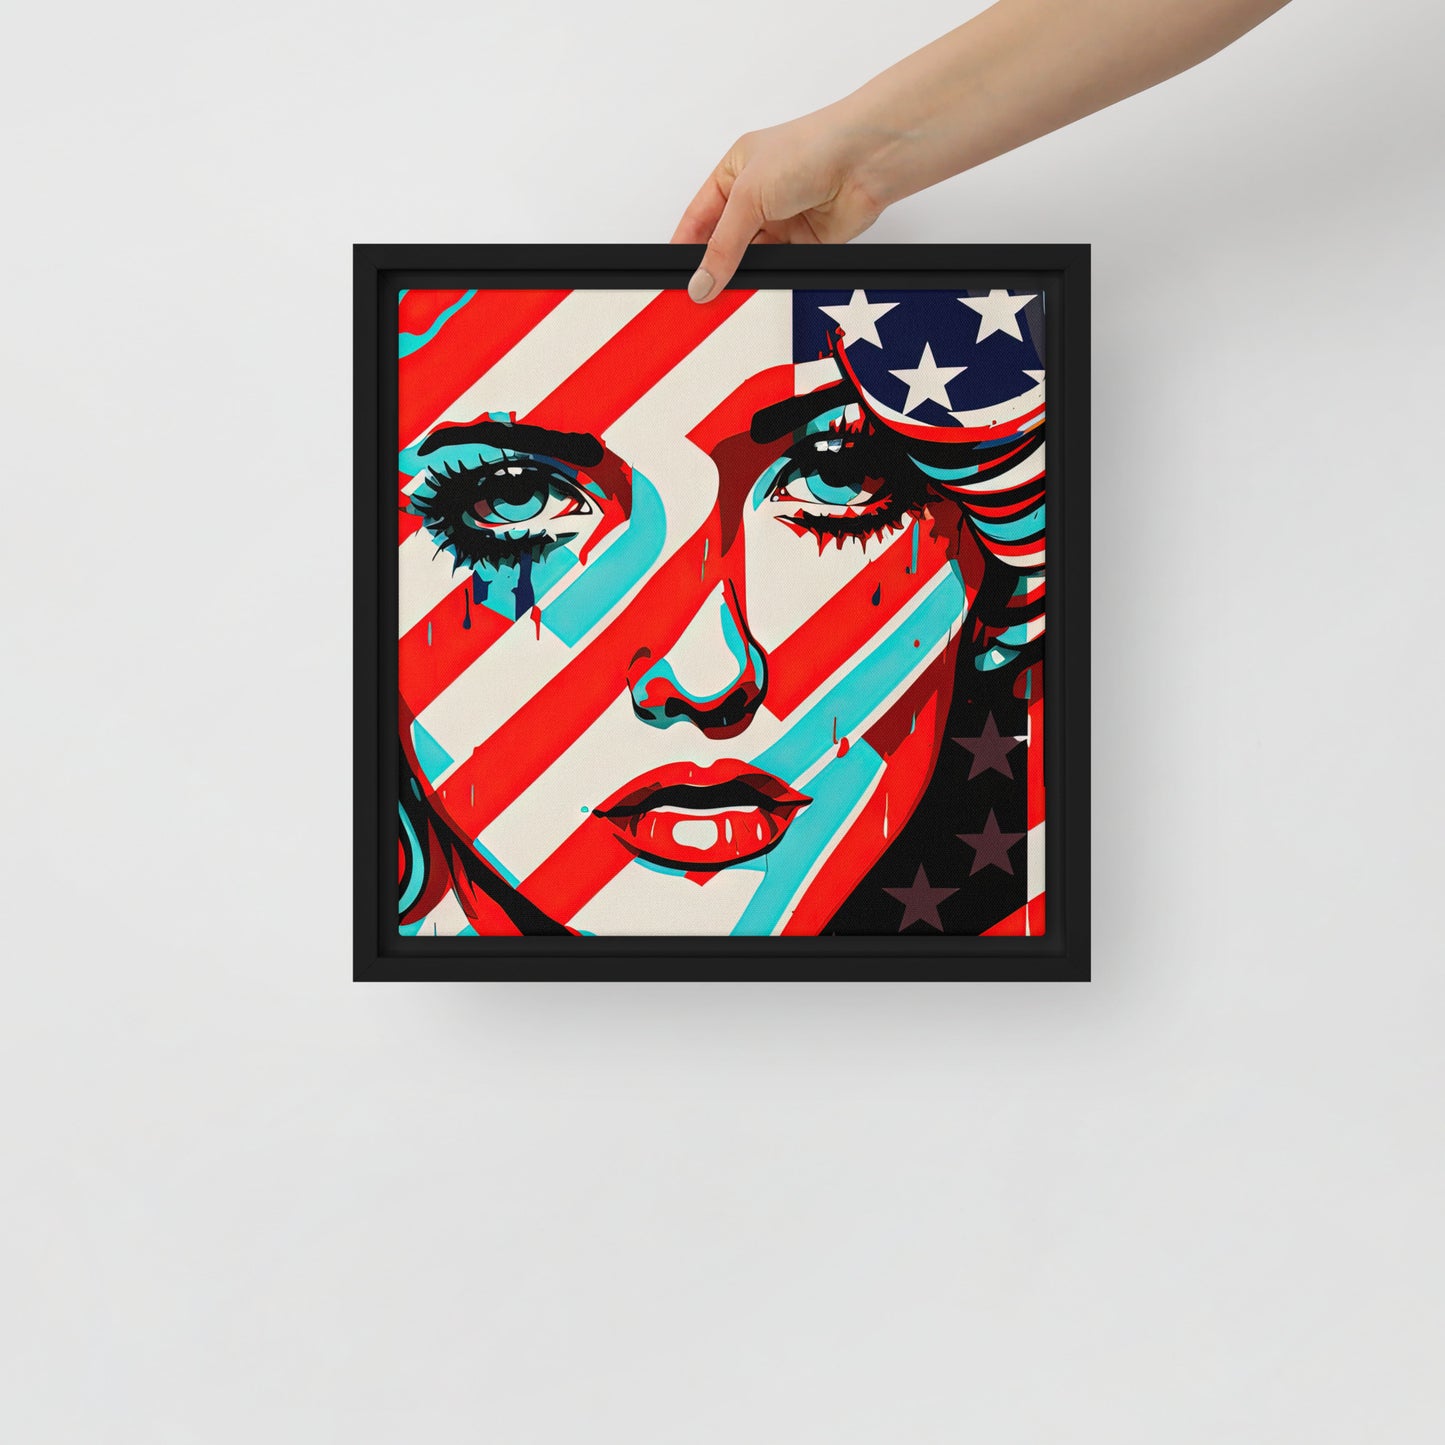 USA Woman Framed canvas